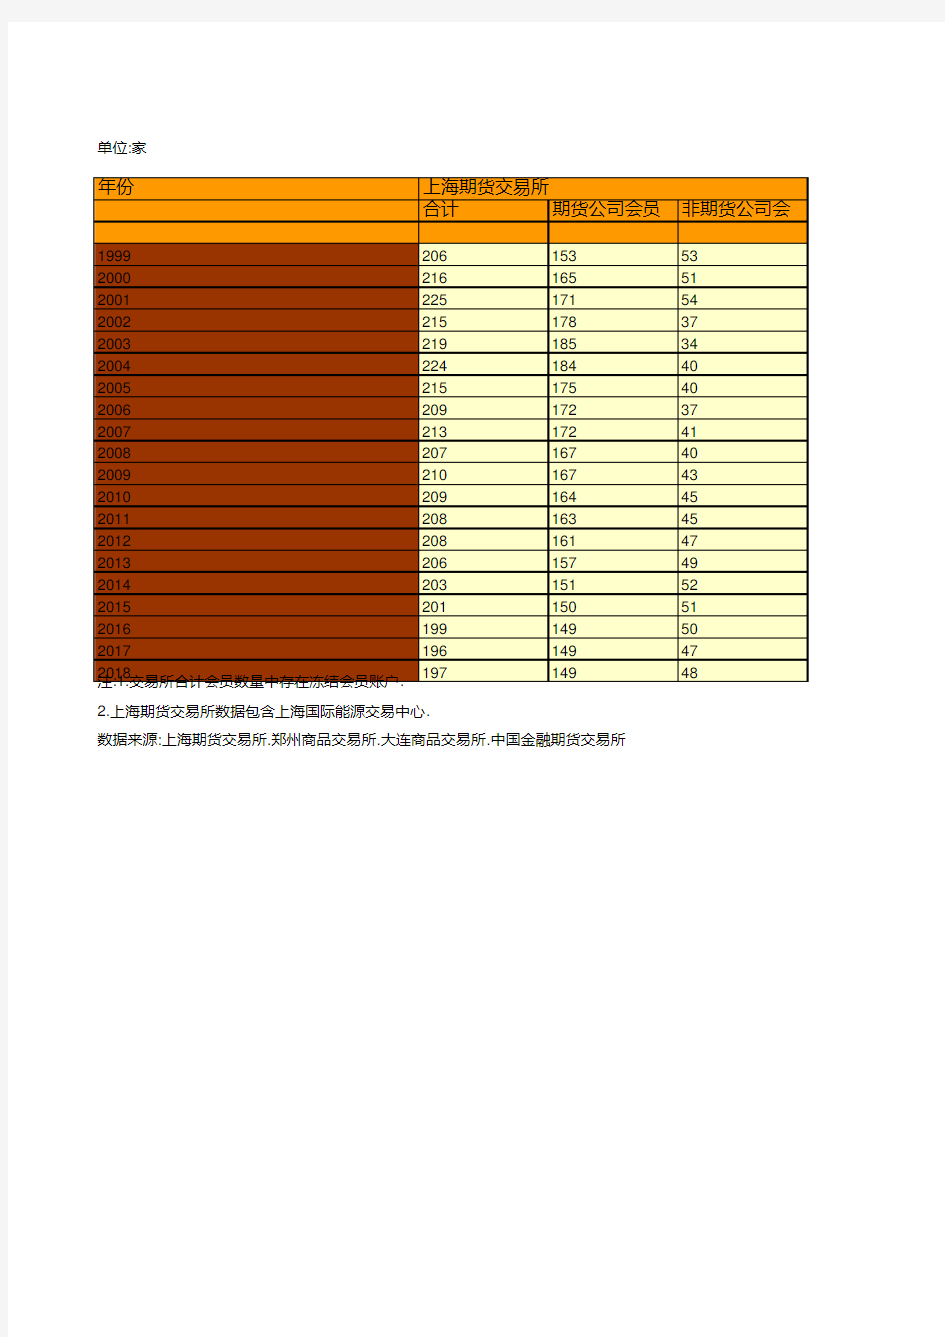 中国历年期货会员机构数情况统计(1999-2018)